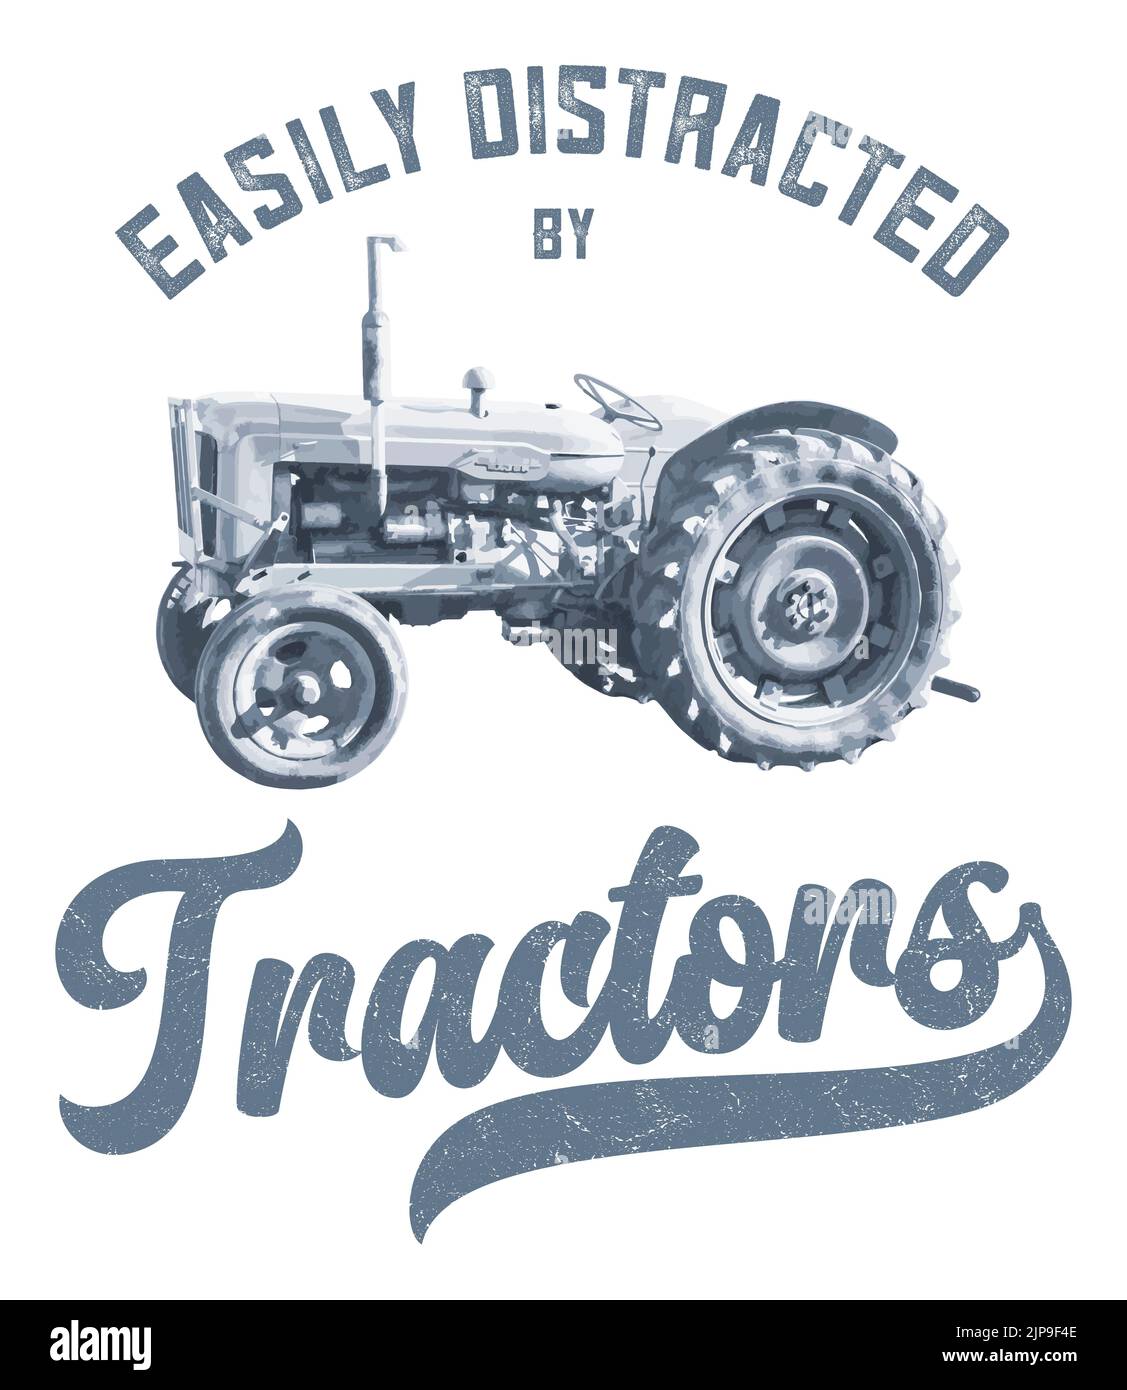 Illustrazione grafica a poster di un trattore (Fordson Major) con la dicitura "facilmente distratto dai trattori" Foto Stock